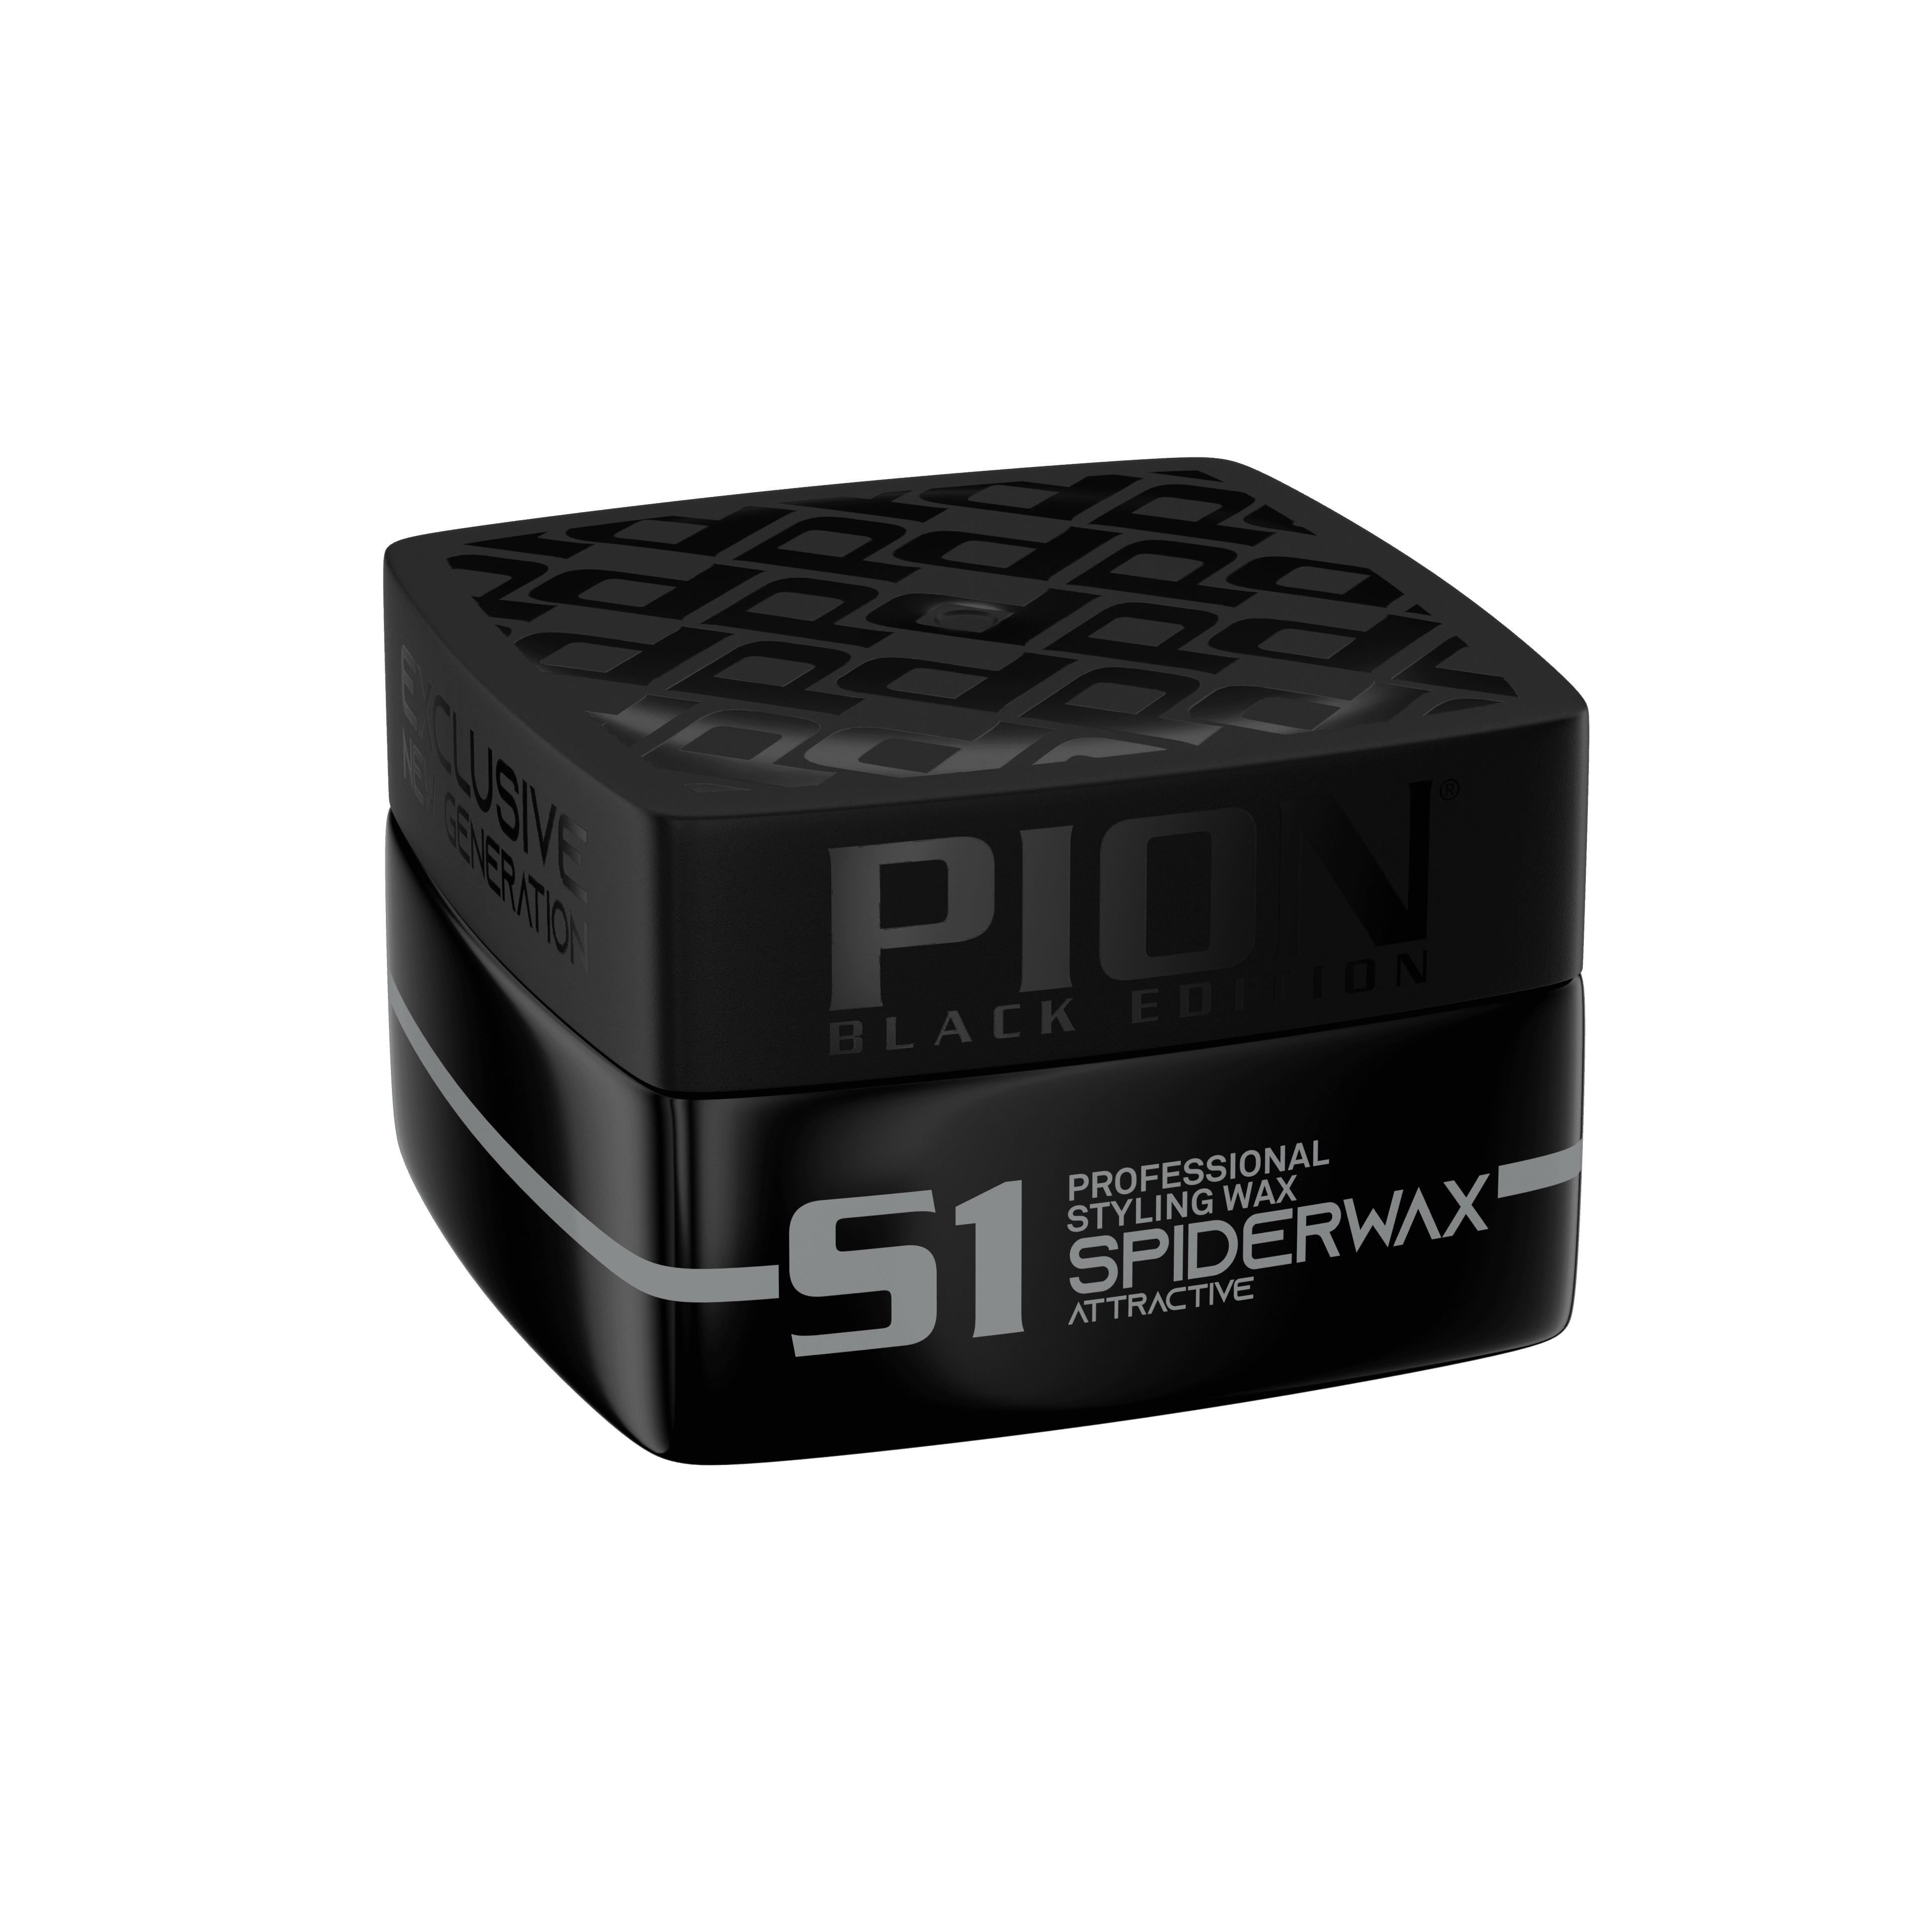 Pion Wax Spiderwax - PION BLACK EDITION